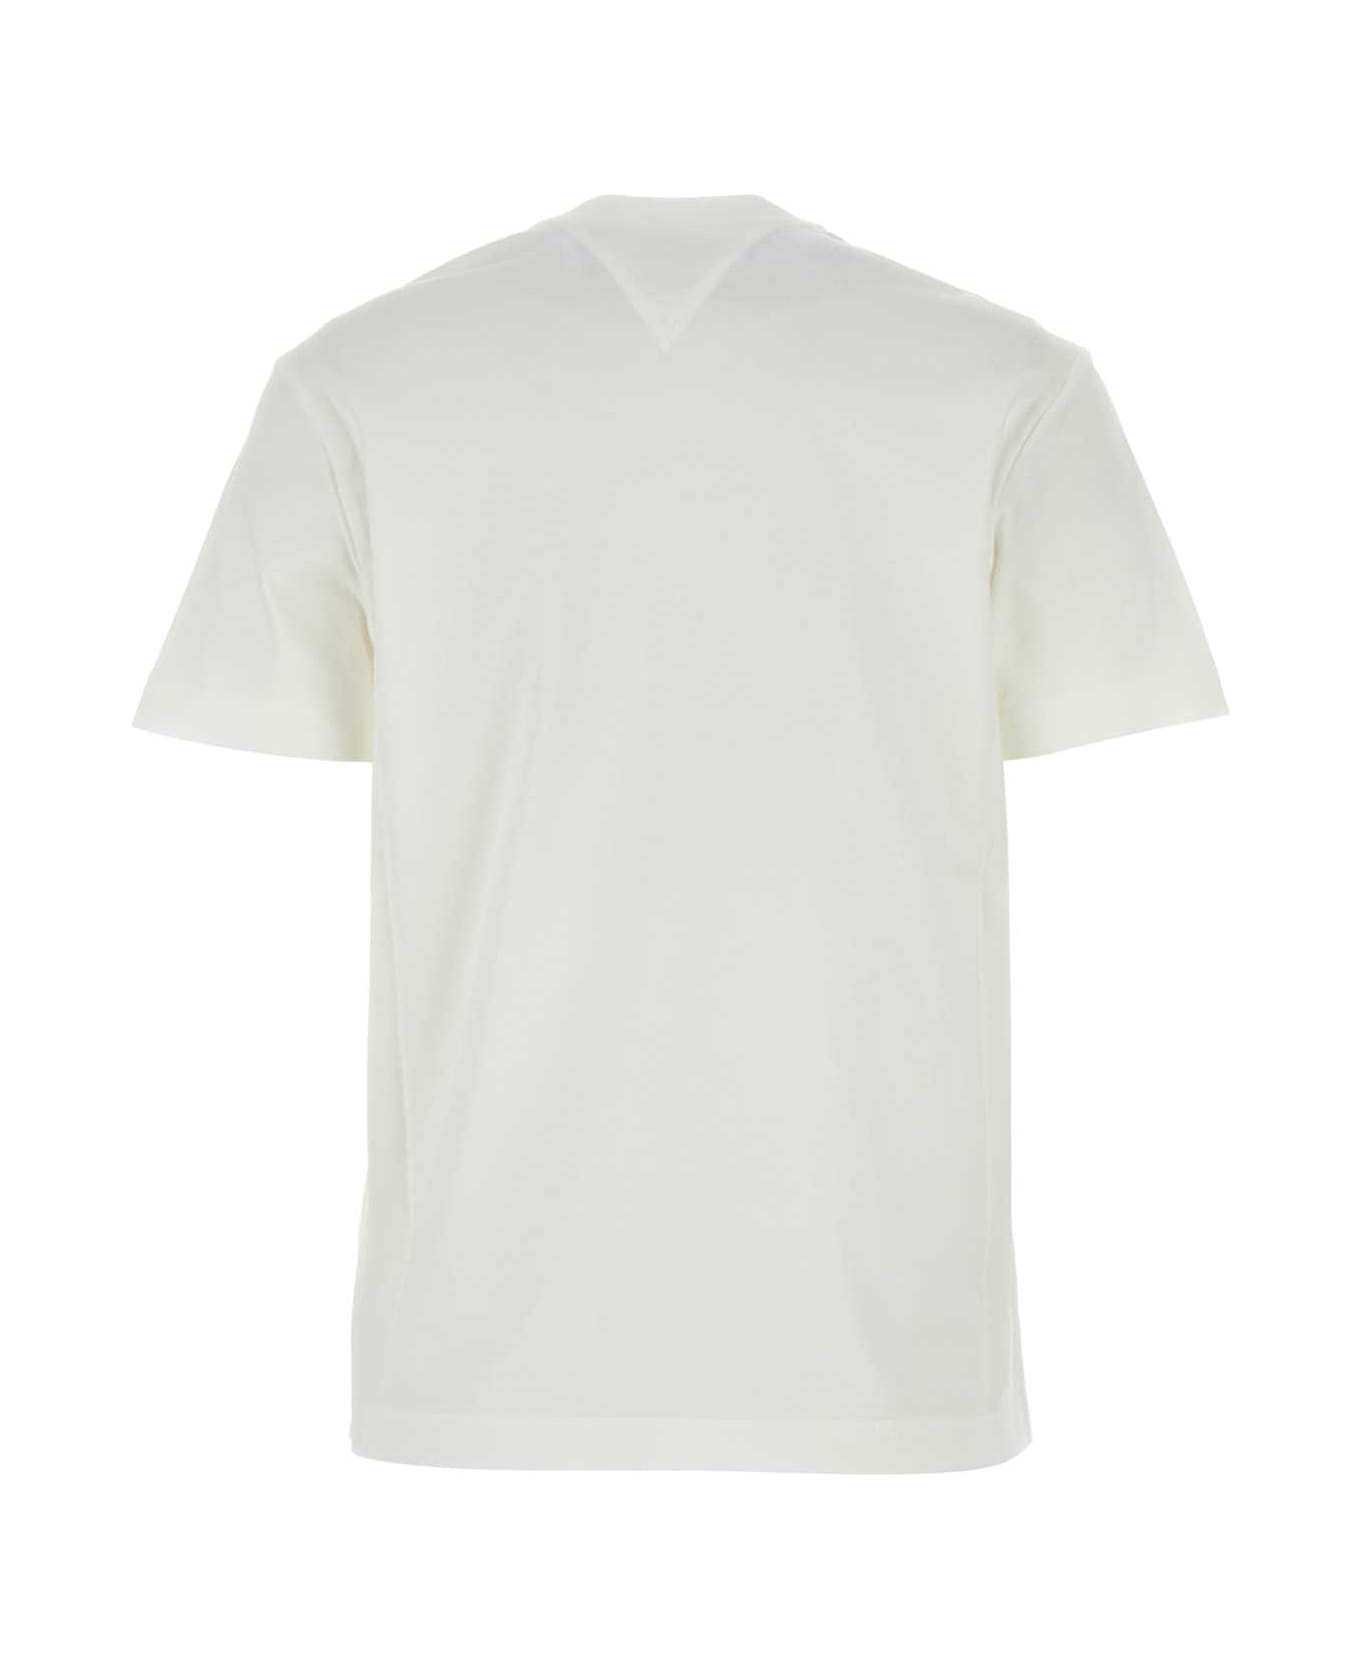 Bottega Veneta White Cotton T-shirt - CHALK